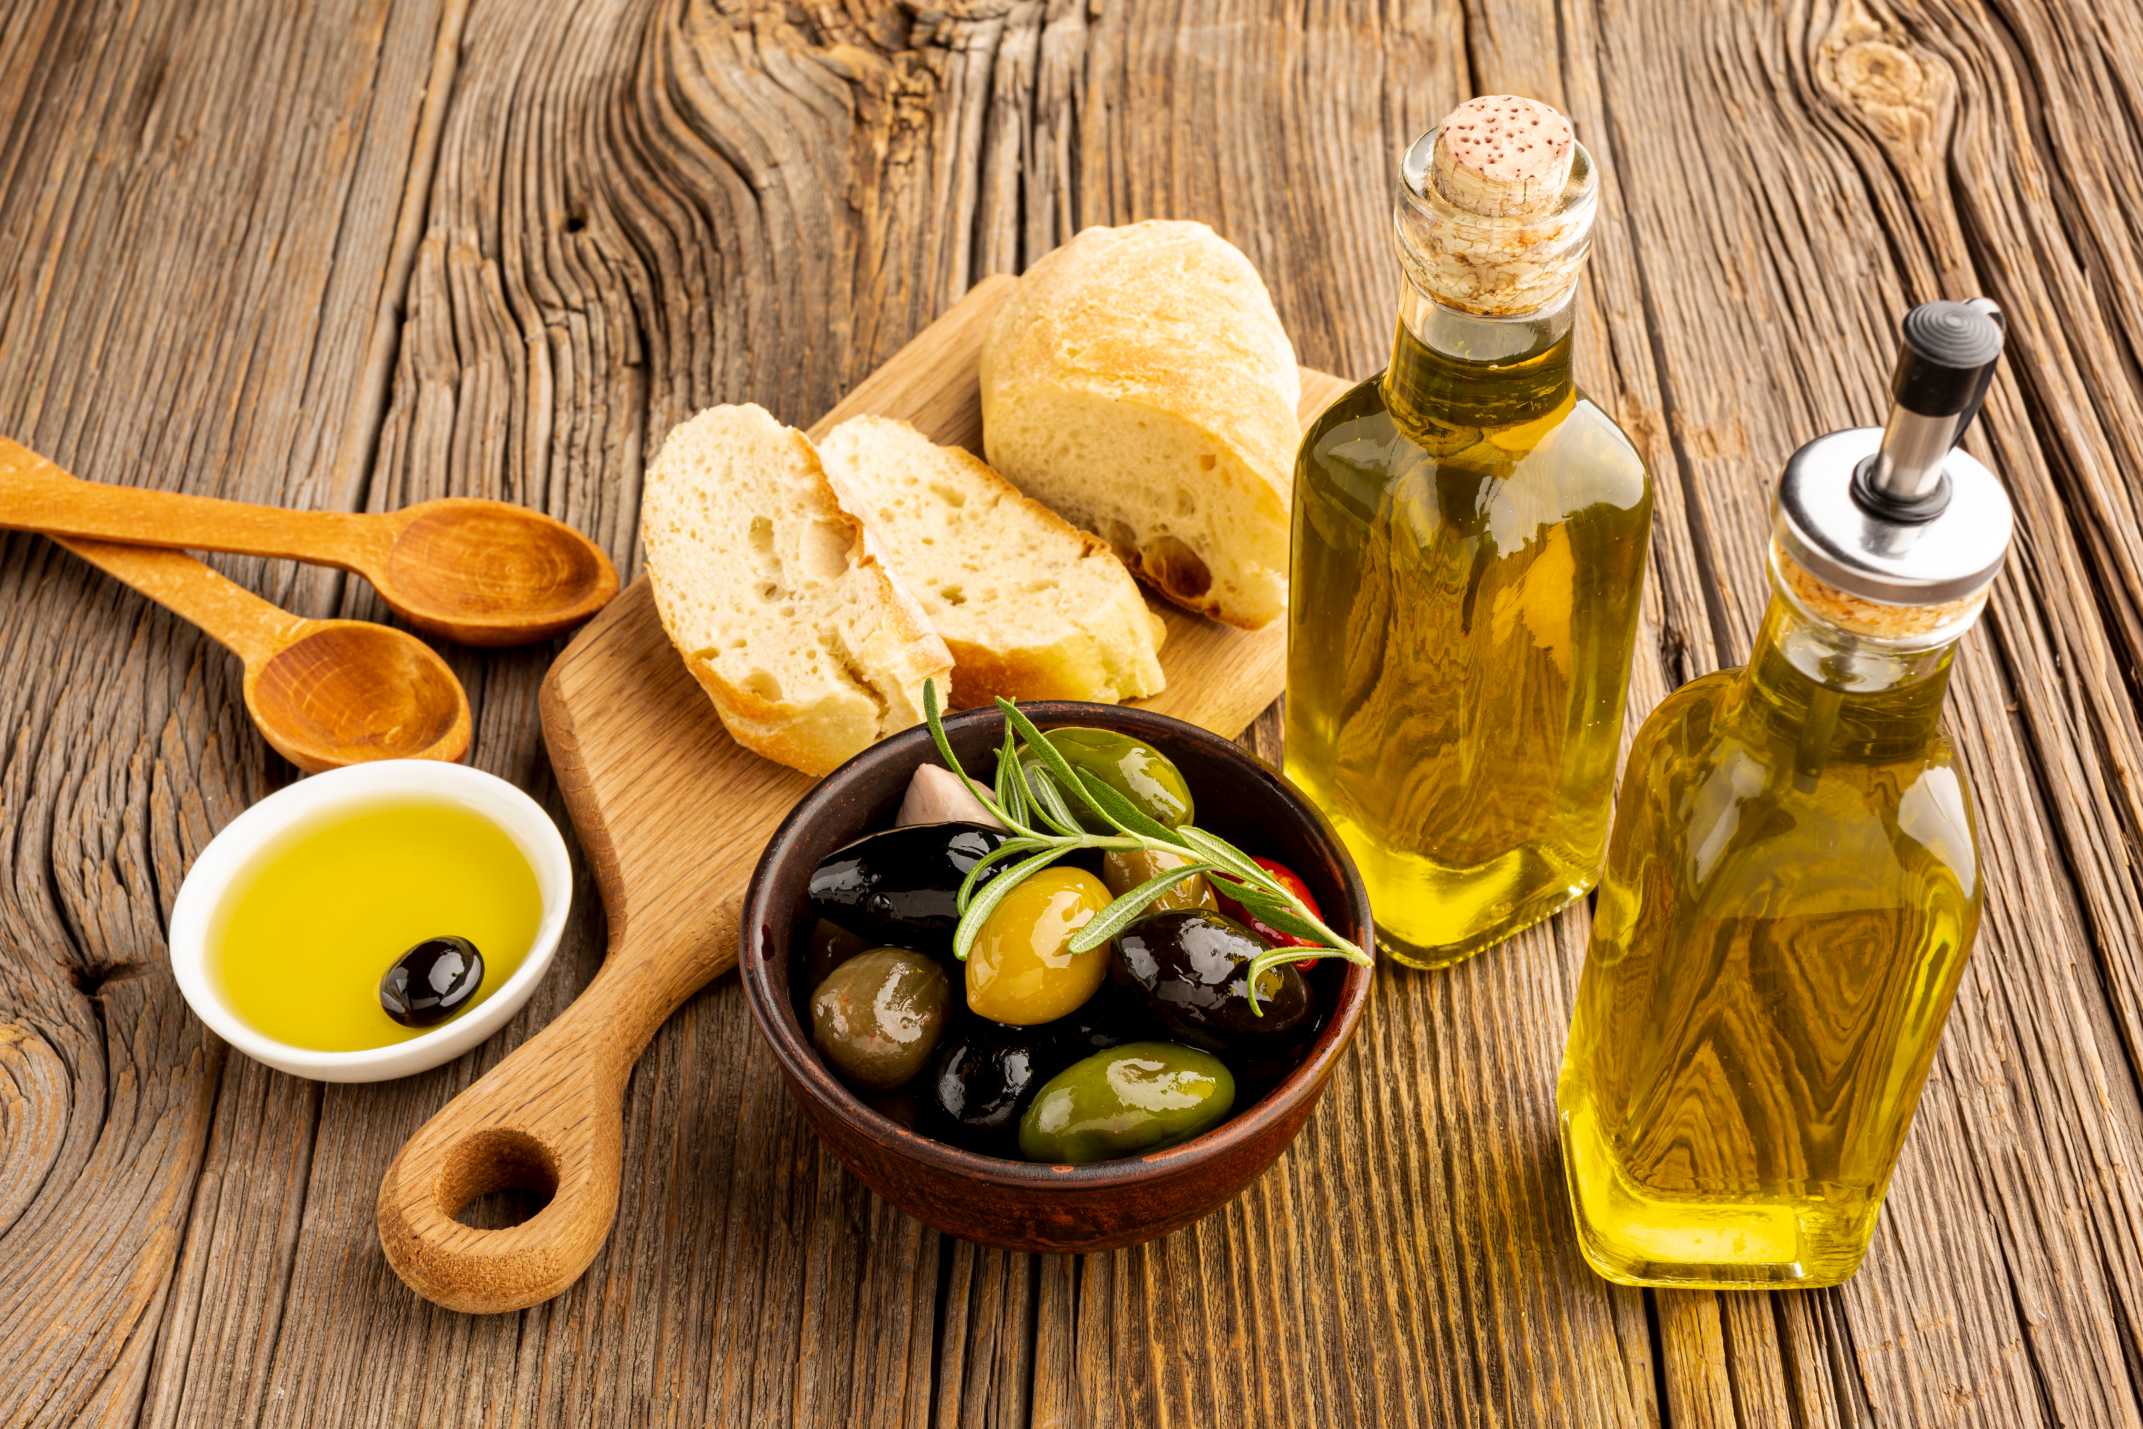 Tại sao nên sử dụng dầu oliu thay cho các loại dầu ăn thông thường?